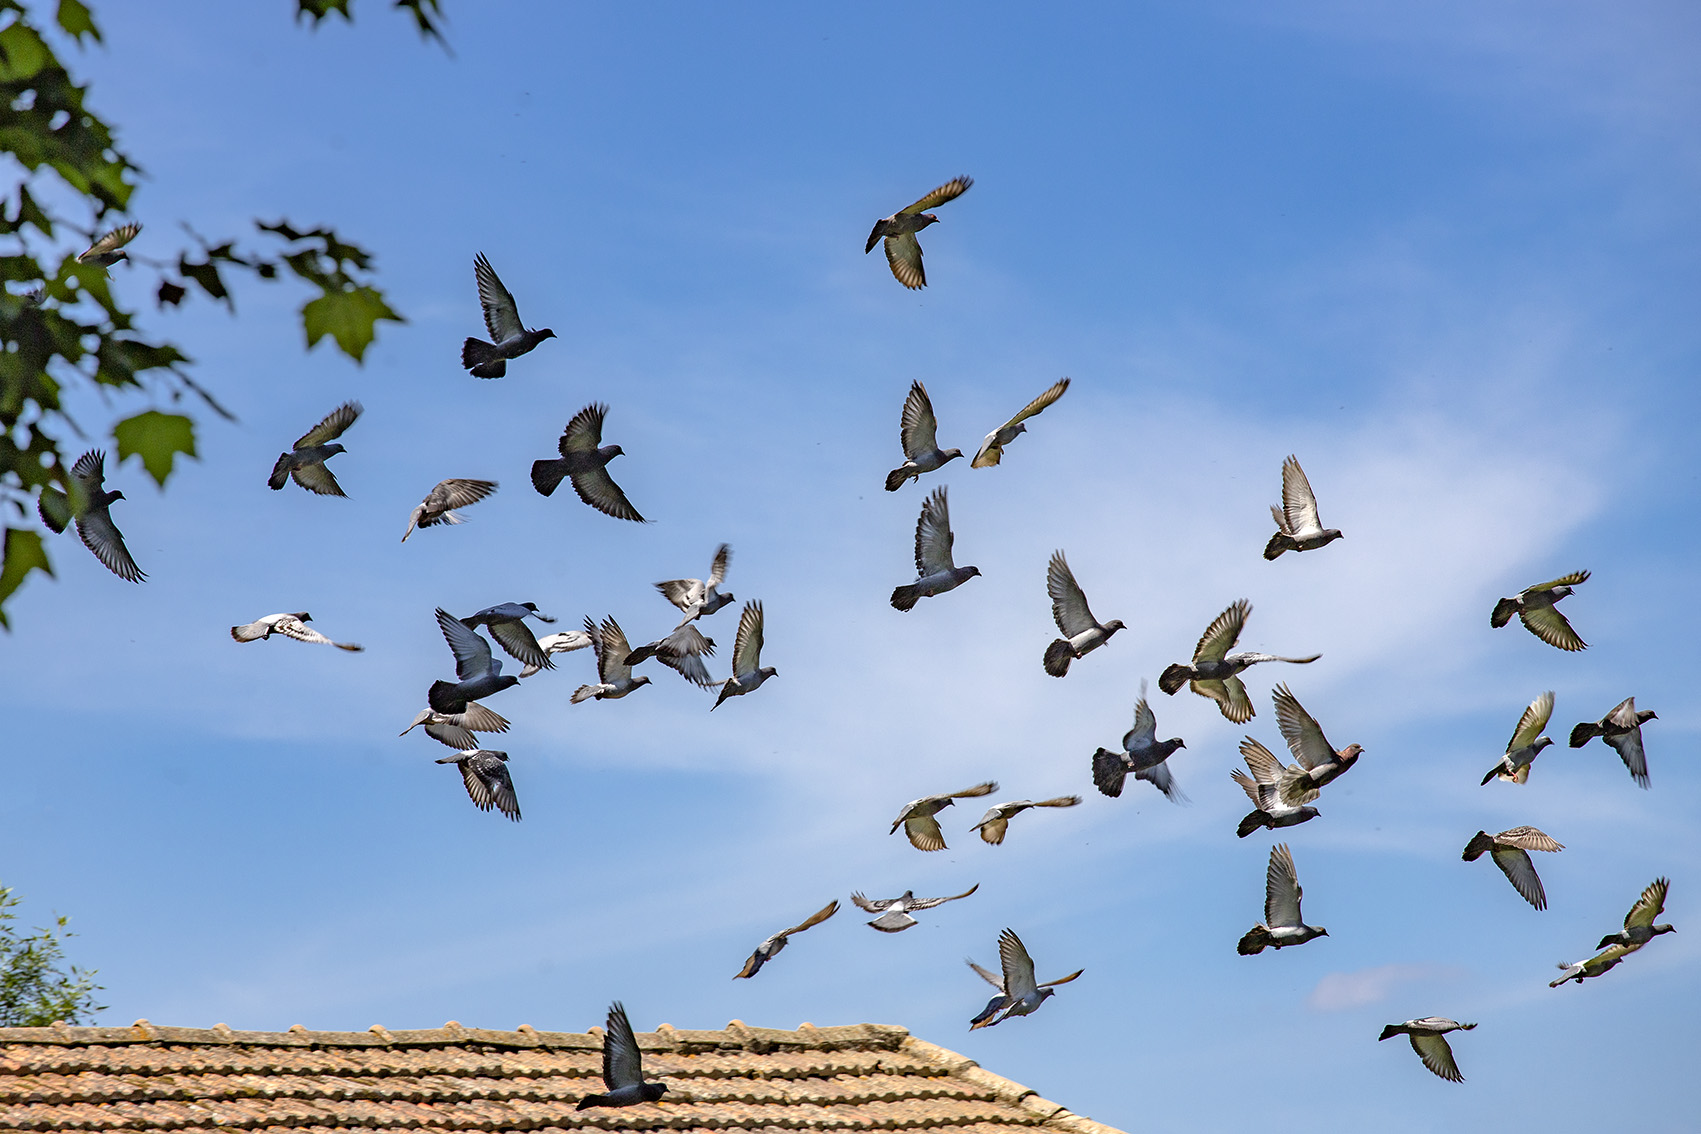 Envol d'un groupe de pigeons depuis un toit en tuile rouge sur fond de ciel bleu pour une illustration d'un magazine spécialisé dans la photographie animalière